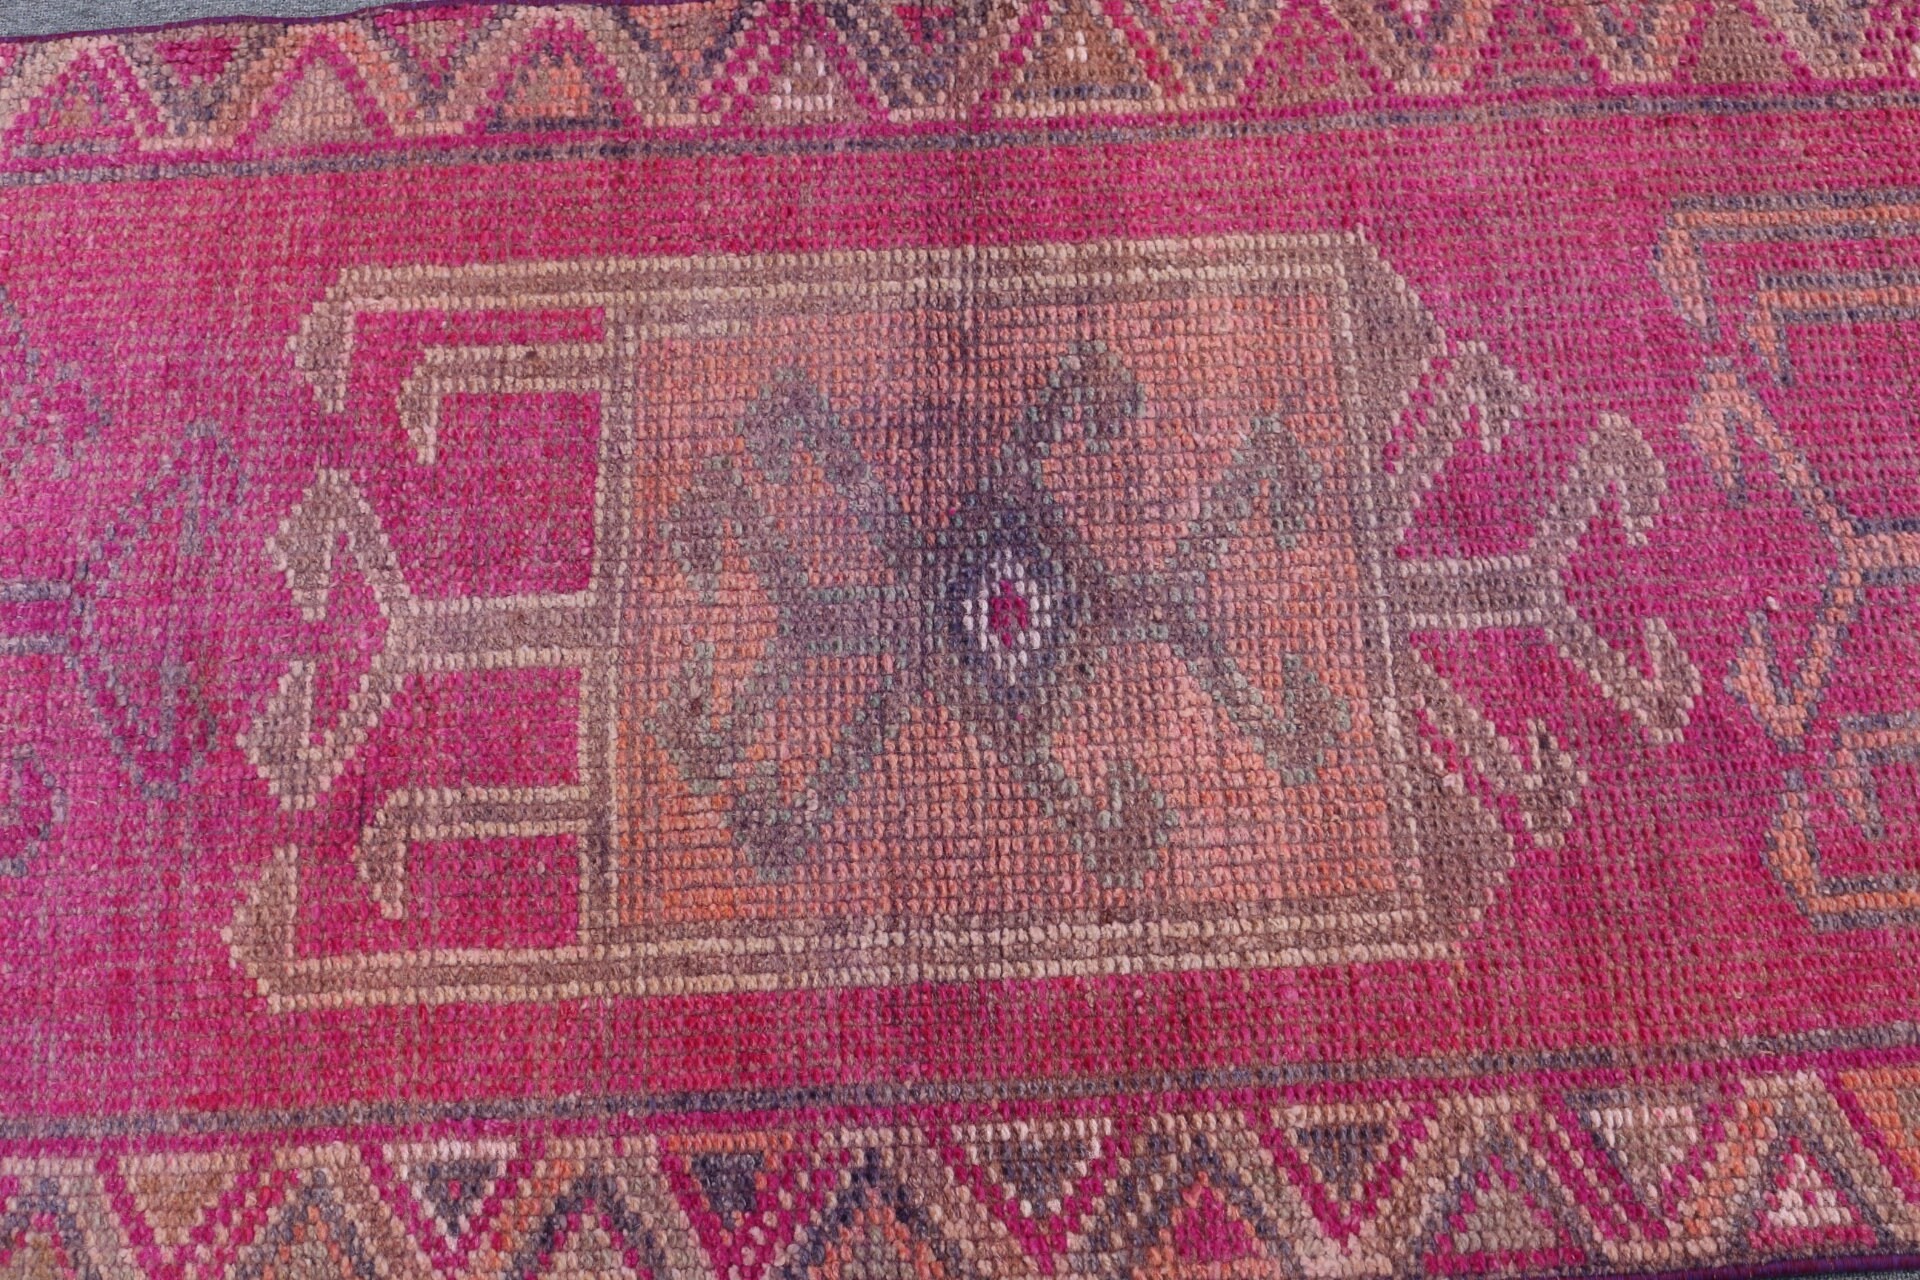 Turkish Rugs, Oushak Rug, Vintage Rugs, 2.8x10.6 ft Runner Rug, Rugs for Corridor, Floor Rug, Pink Antique Rug, Hallway Rug, Tribal Rug